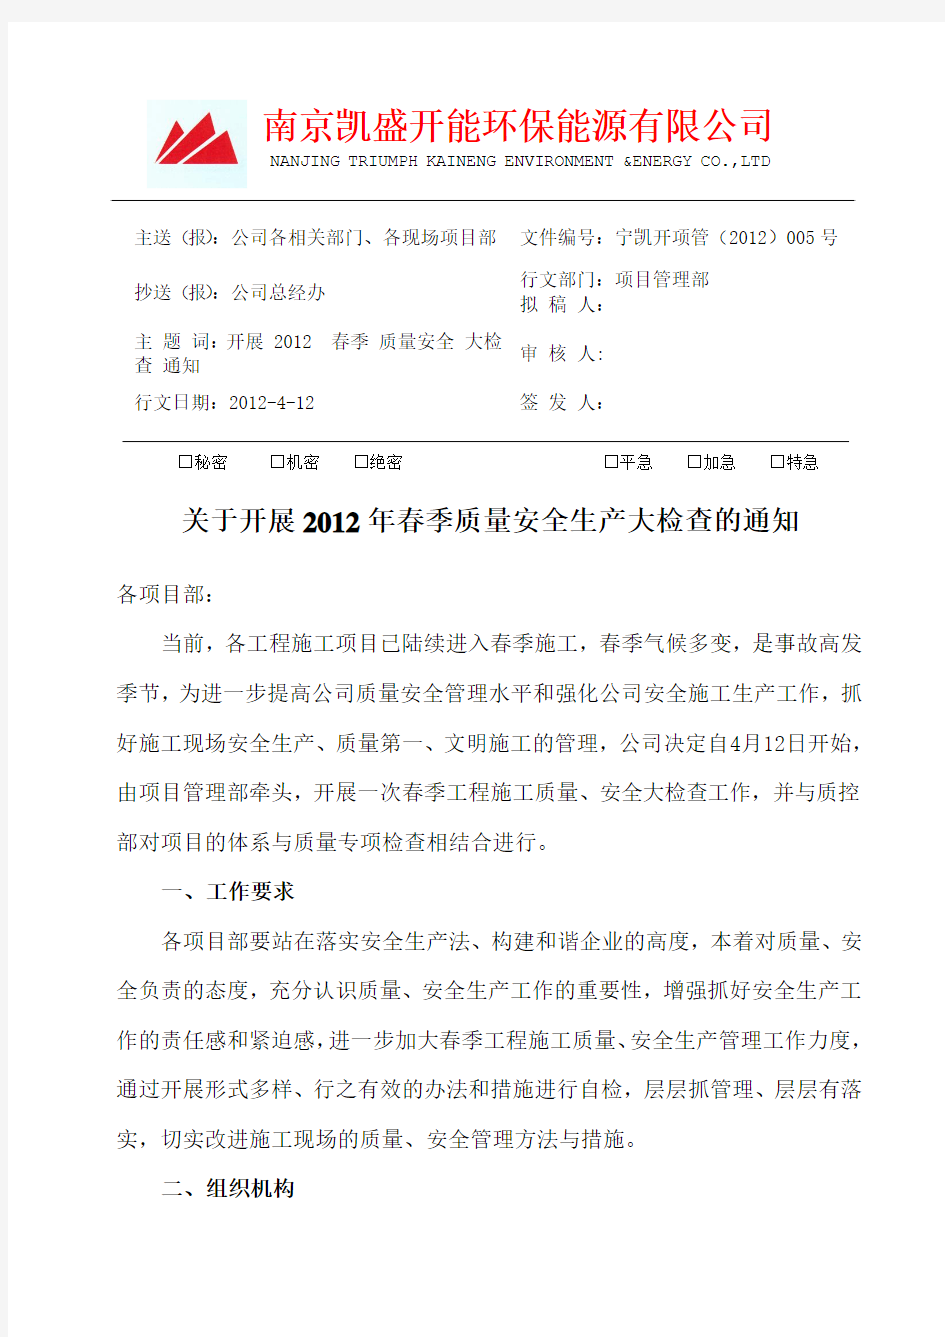 05-2012关于开展春季质量安全生产大检查的通知(修改4.12)